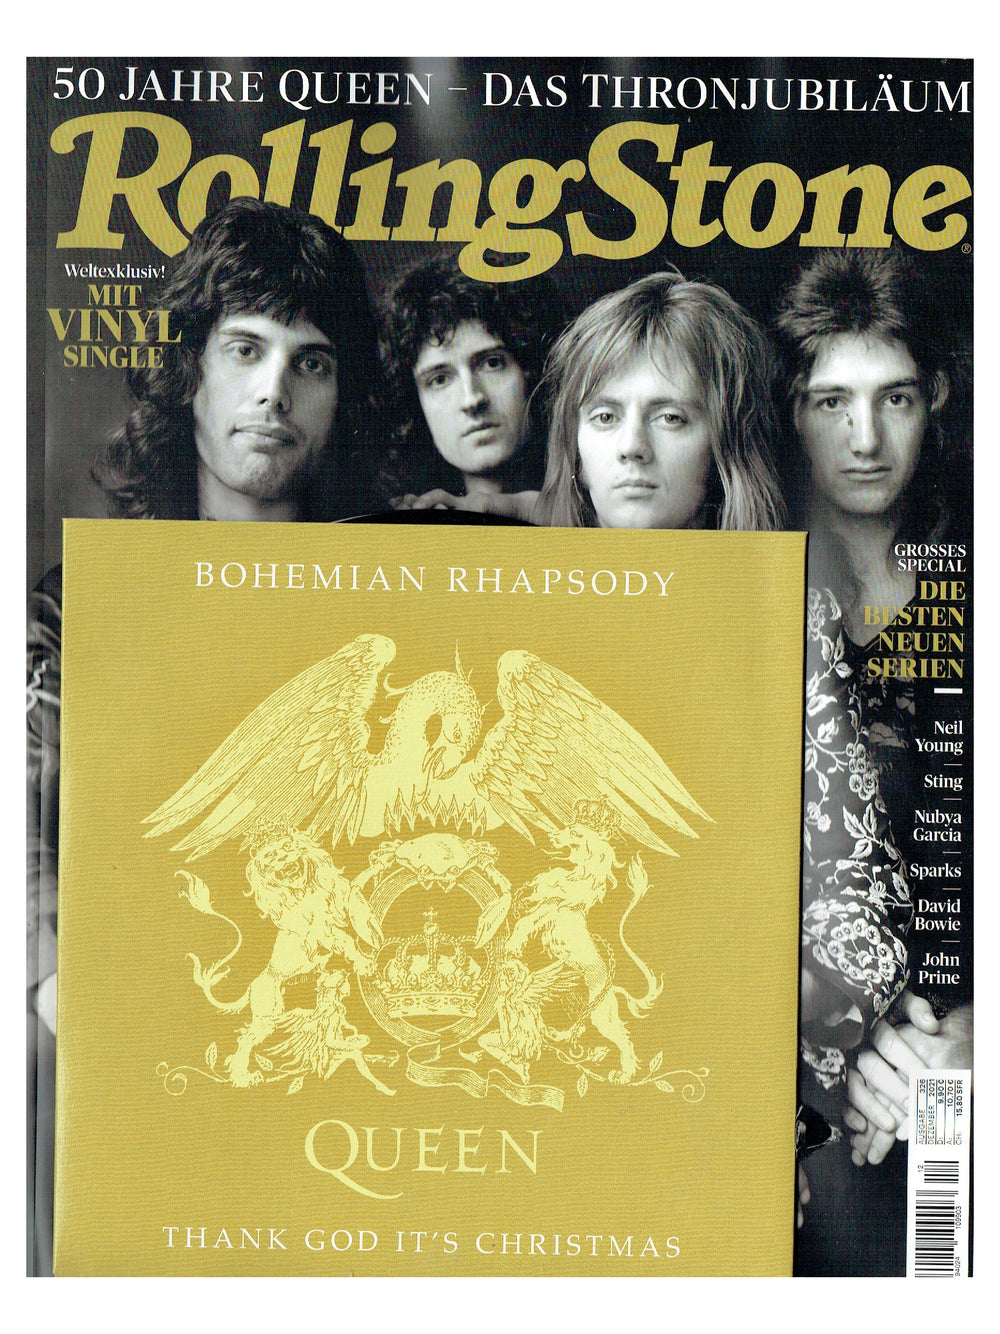 Queen Rolling Stone Exclusive 7 Inch Vinyl Single December 2021